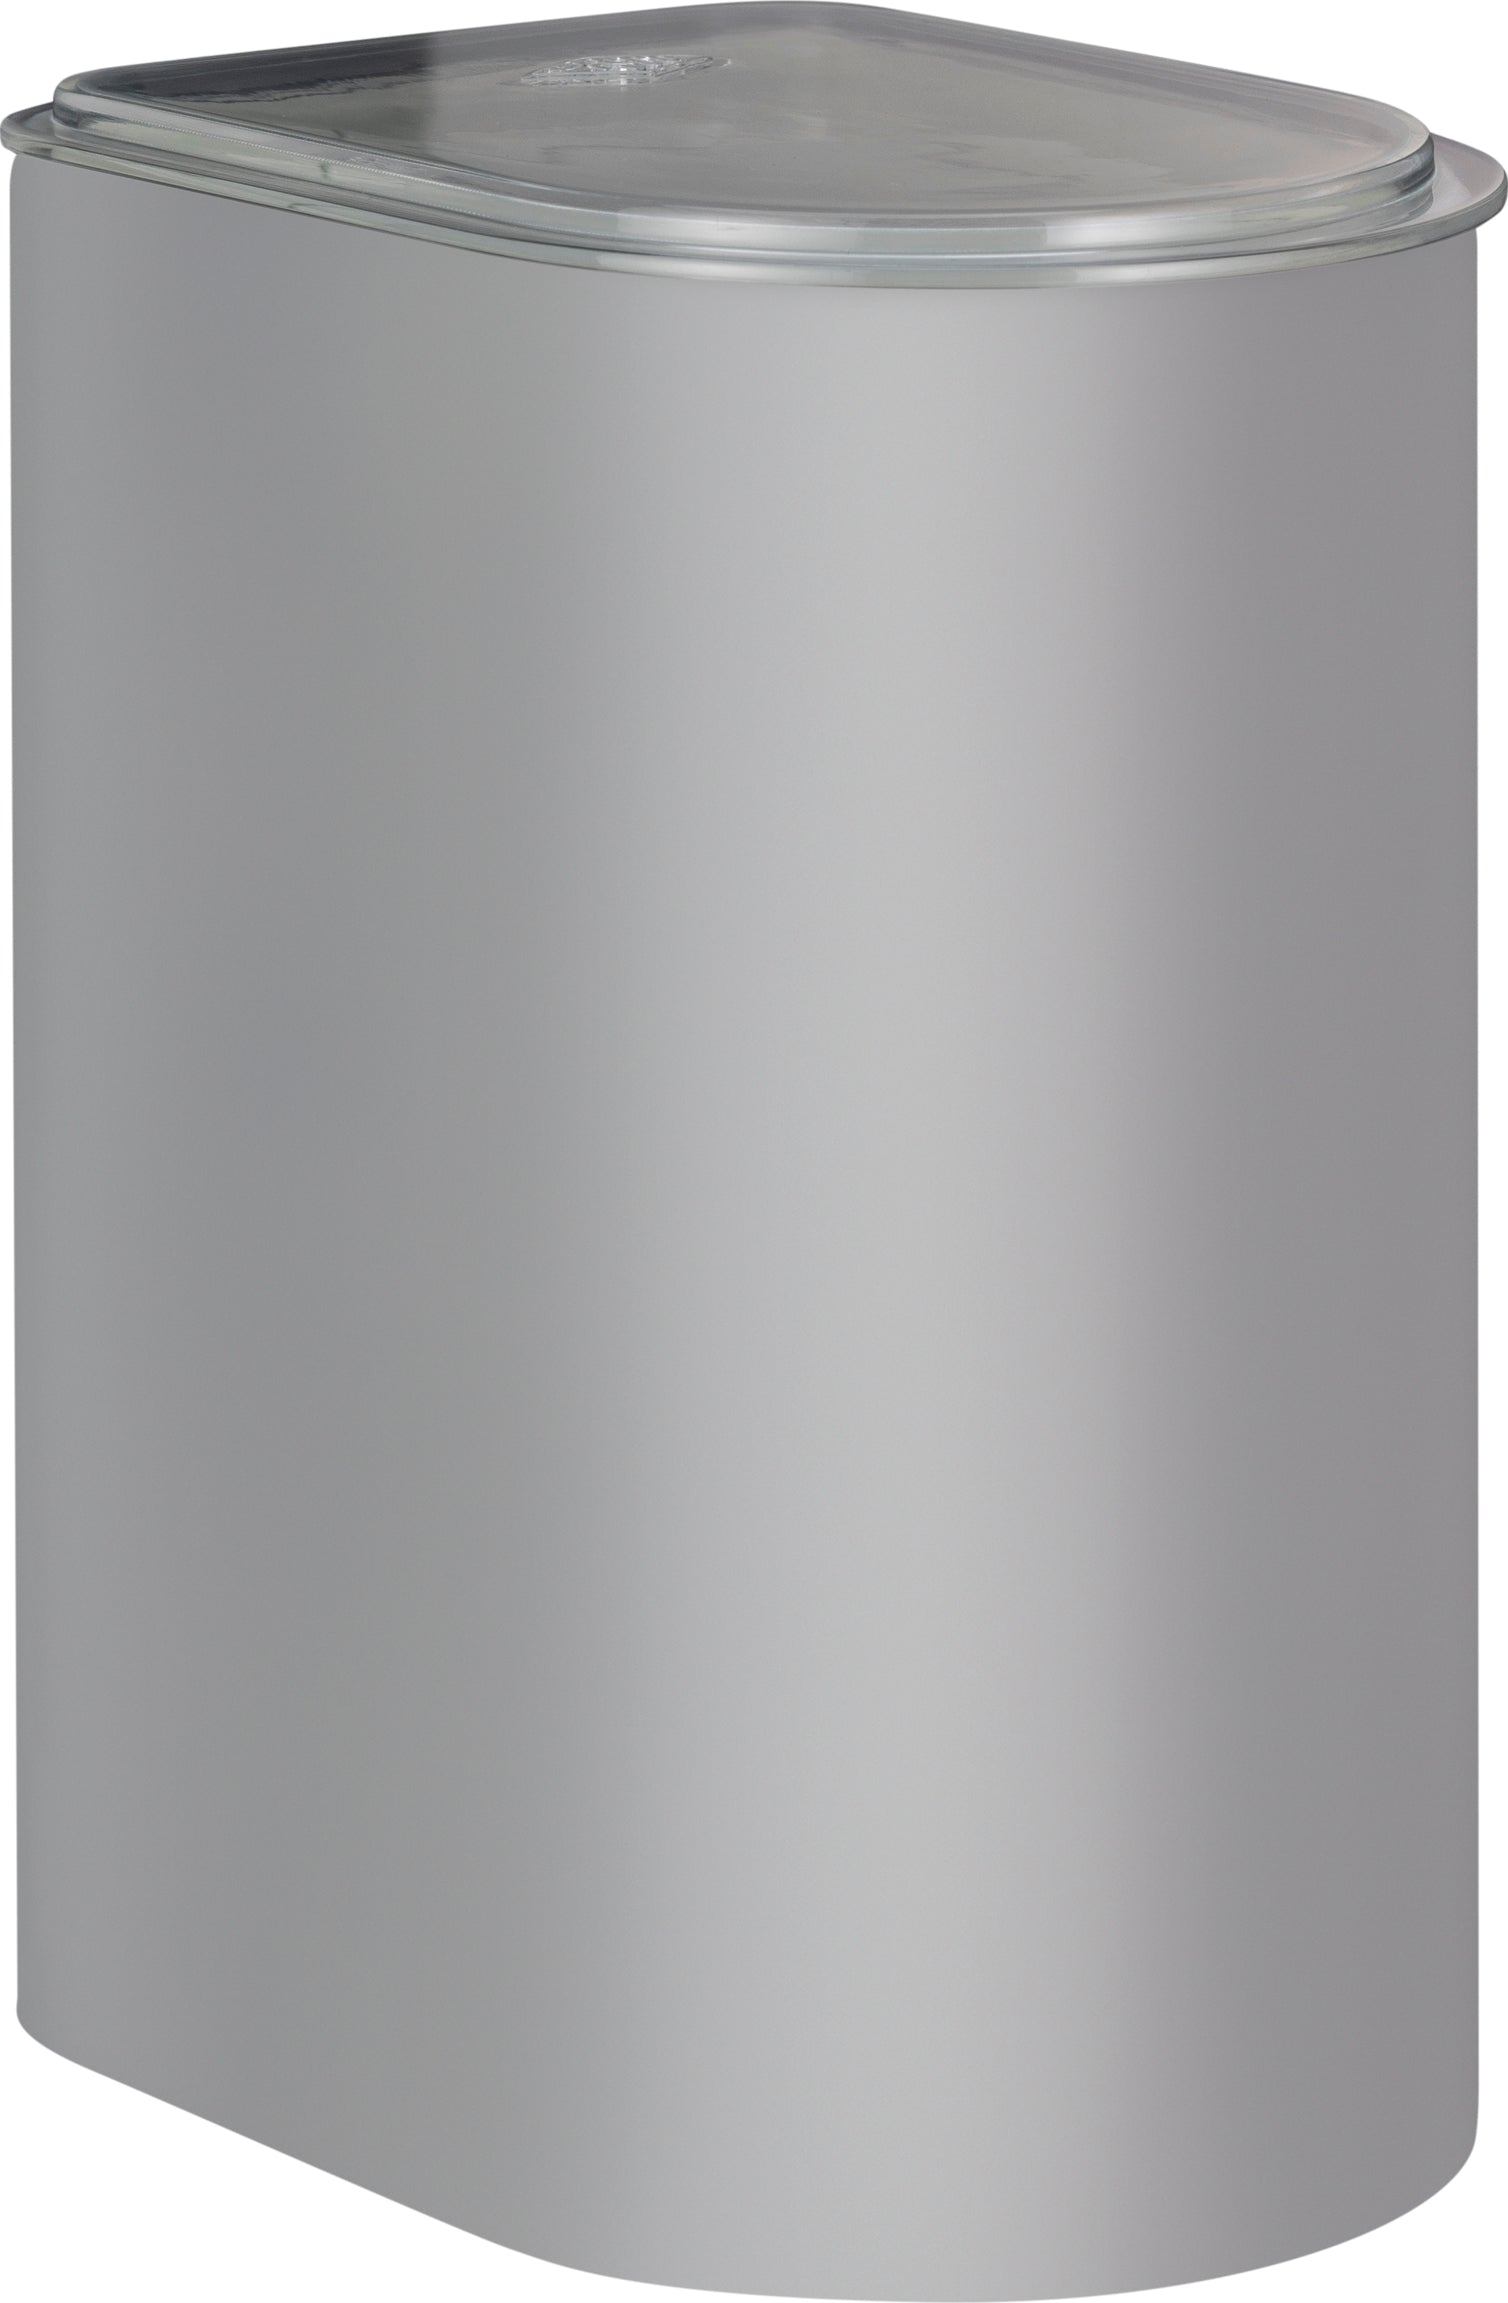 Wesco Canister 3 liter med akryl lokk, kjølig grå matt